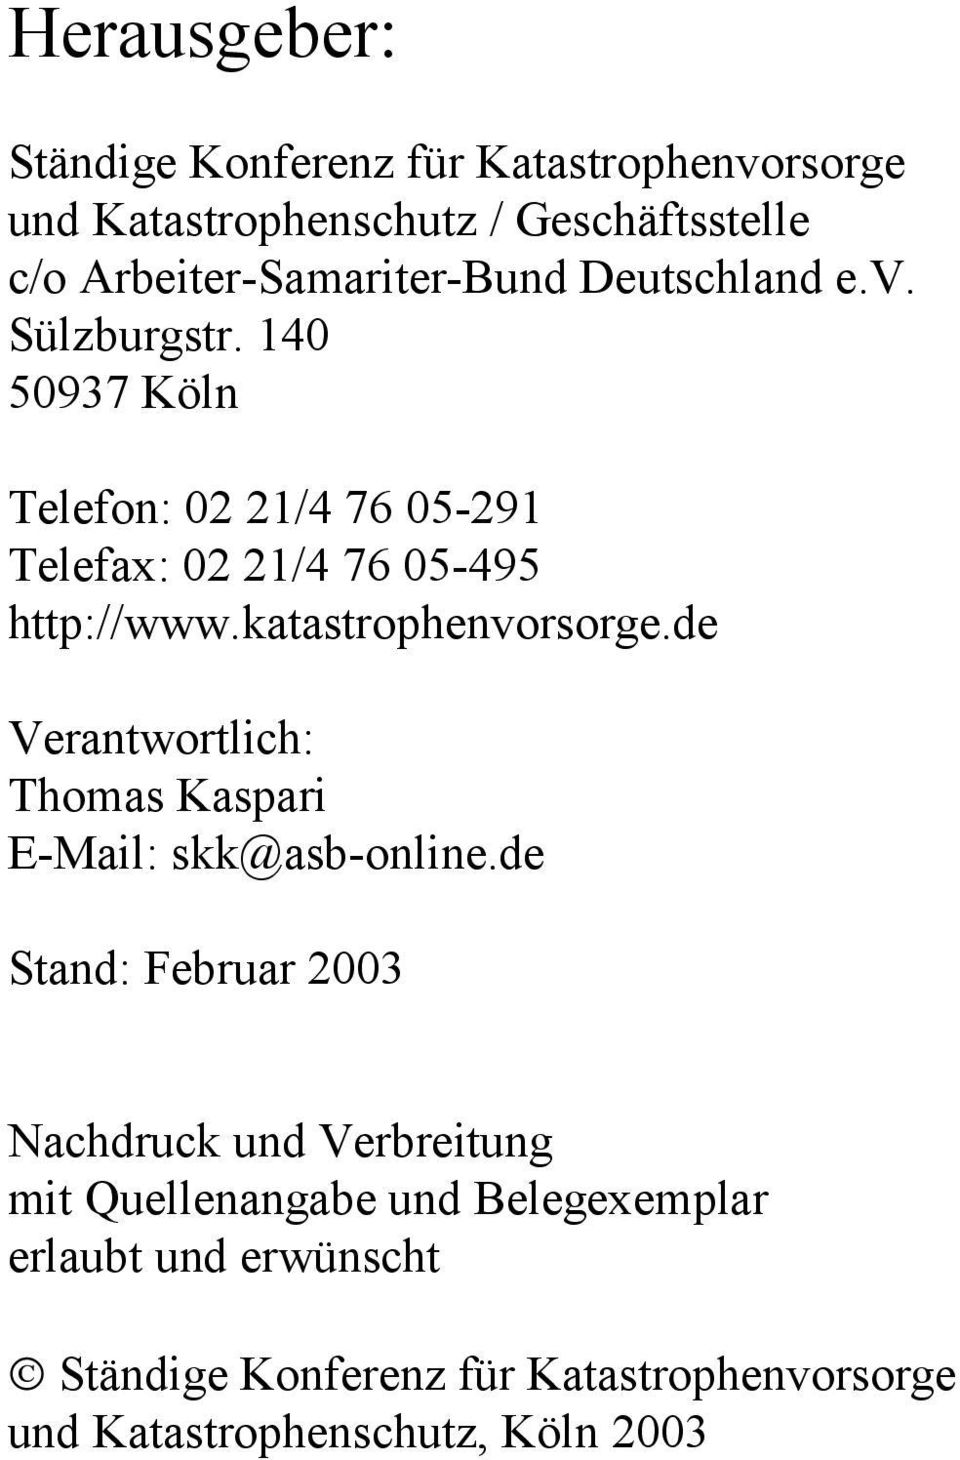 katastrophenvorsorge.de Verantwortlich: Thomas Kaspari E-Mail: skk@asb-online.